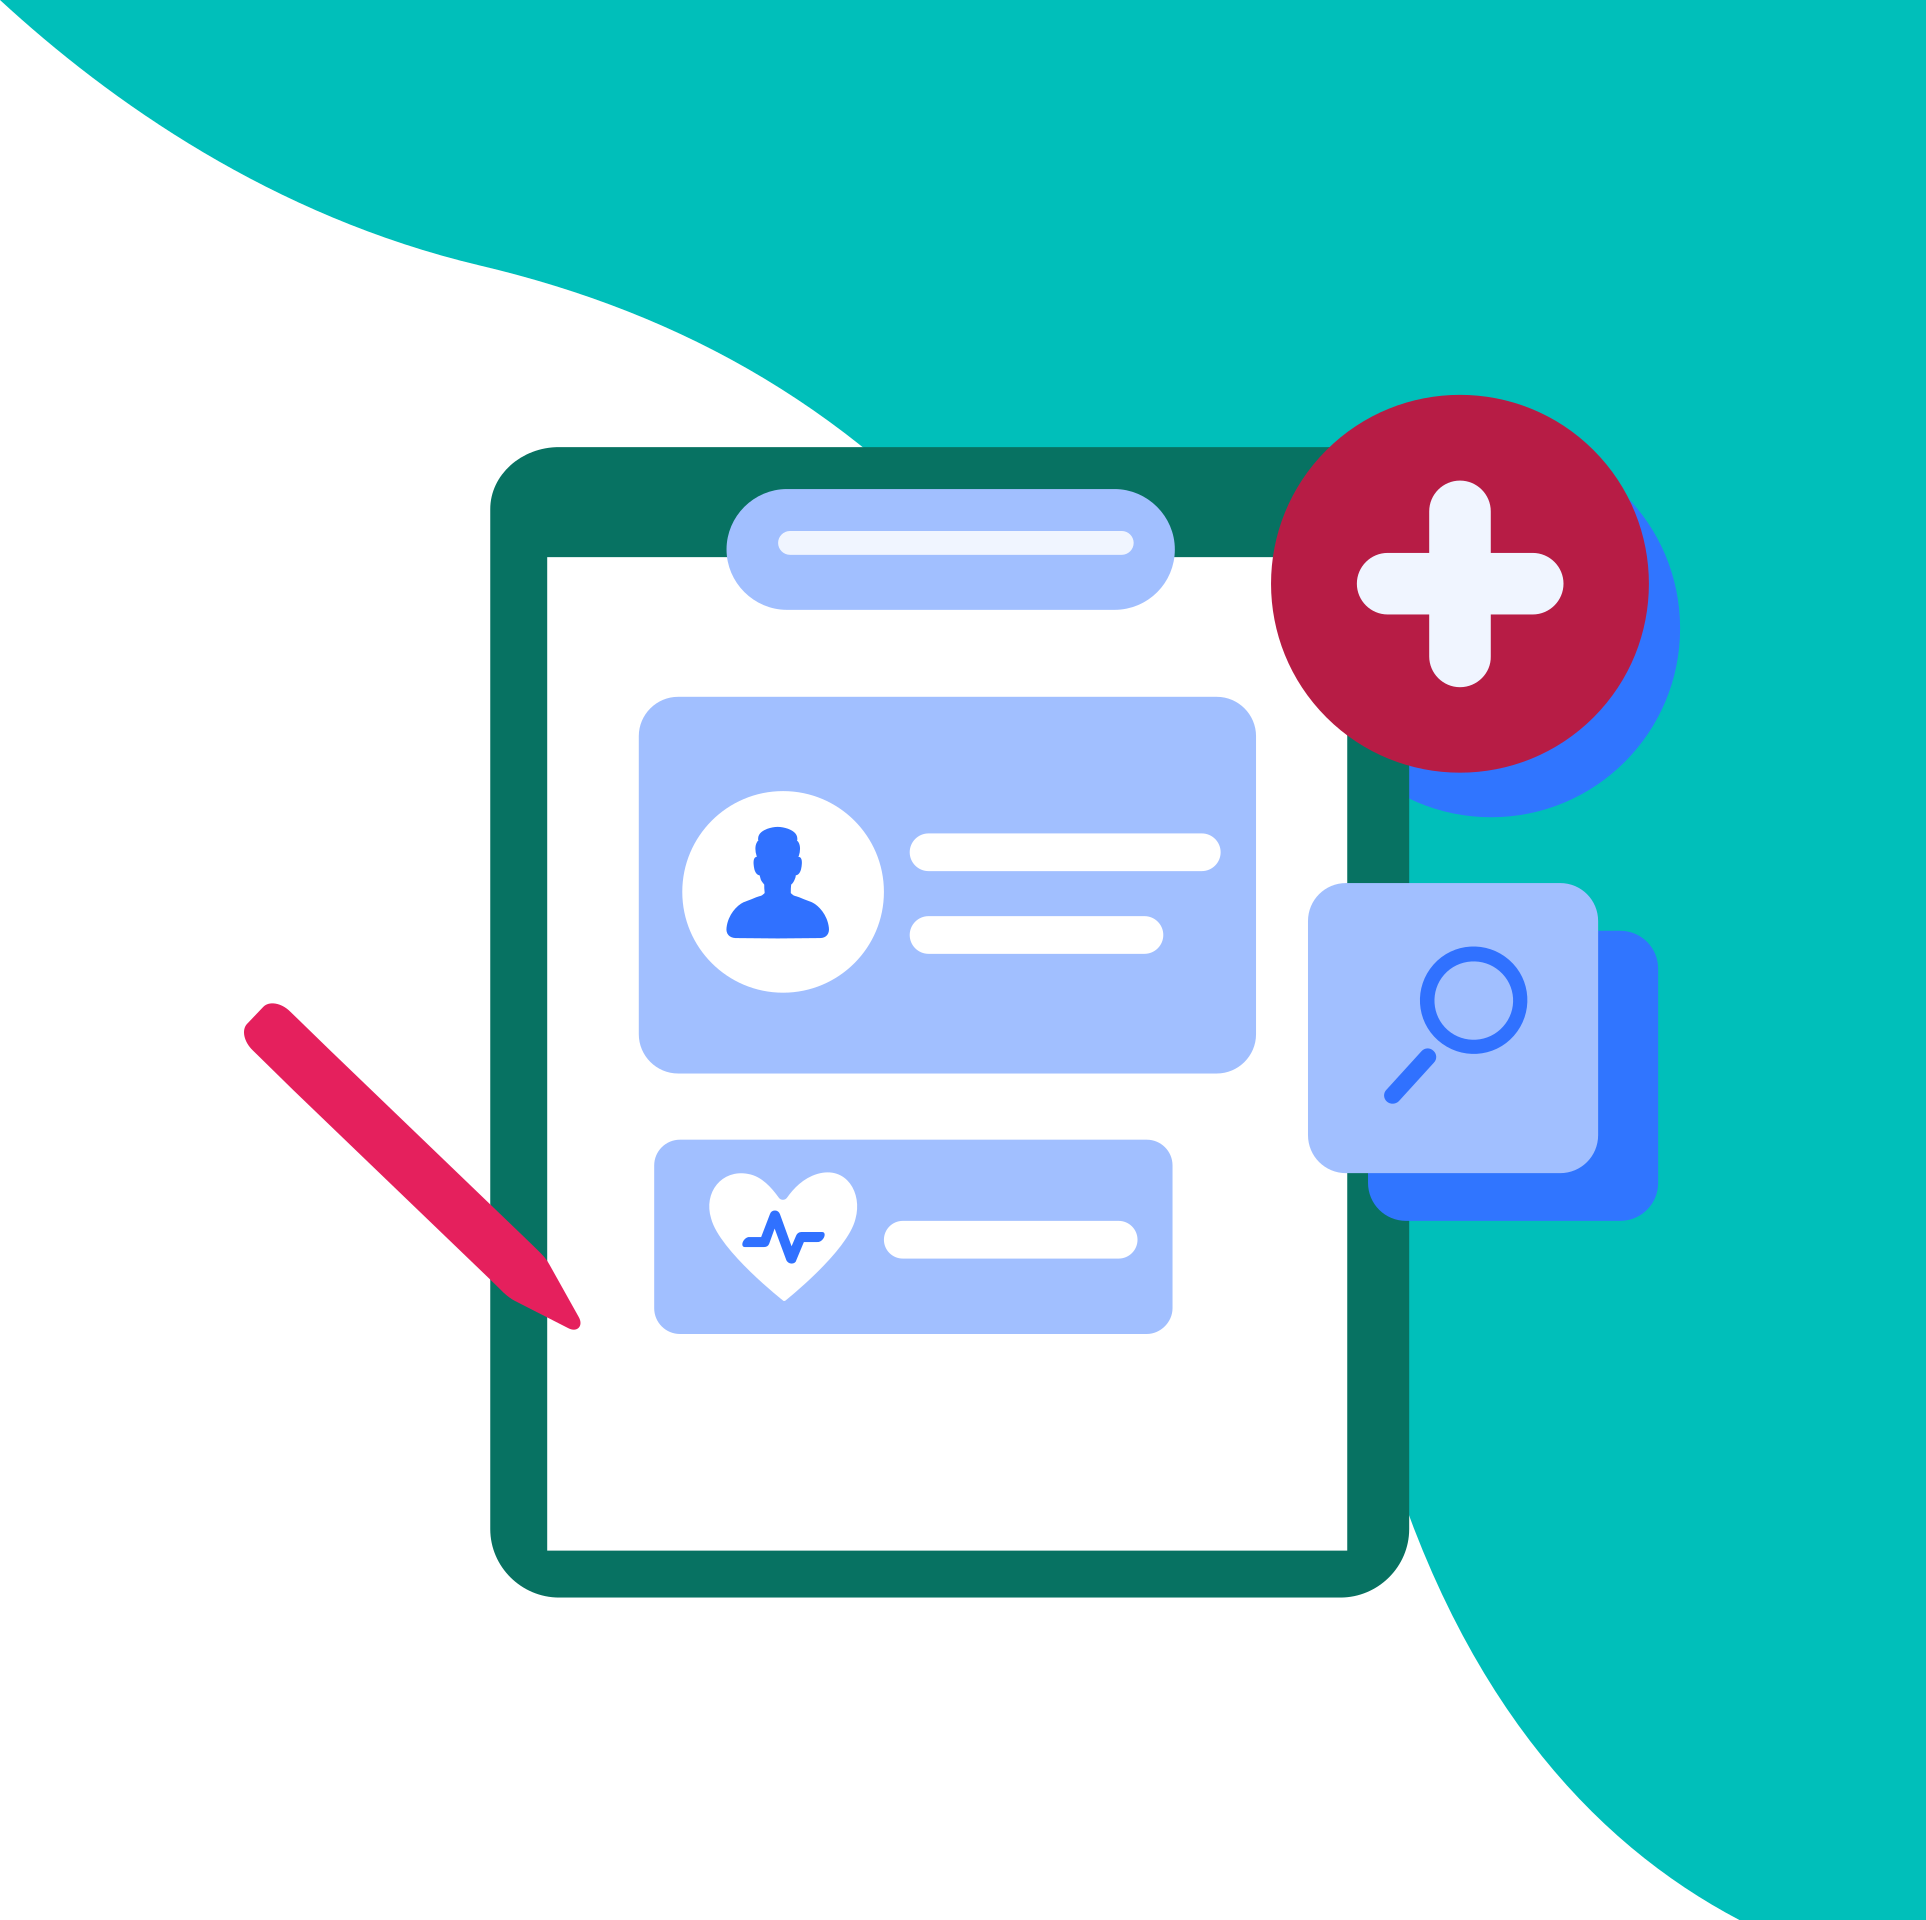 Imagen: Interfaz que muestra el historial de citas junto con la opción de crear una nueva cita, proporcionando una experiencia completa y organizada de gestión de citas médicas.